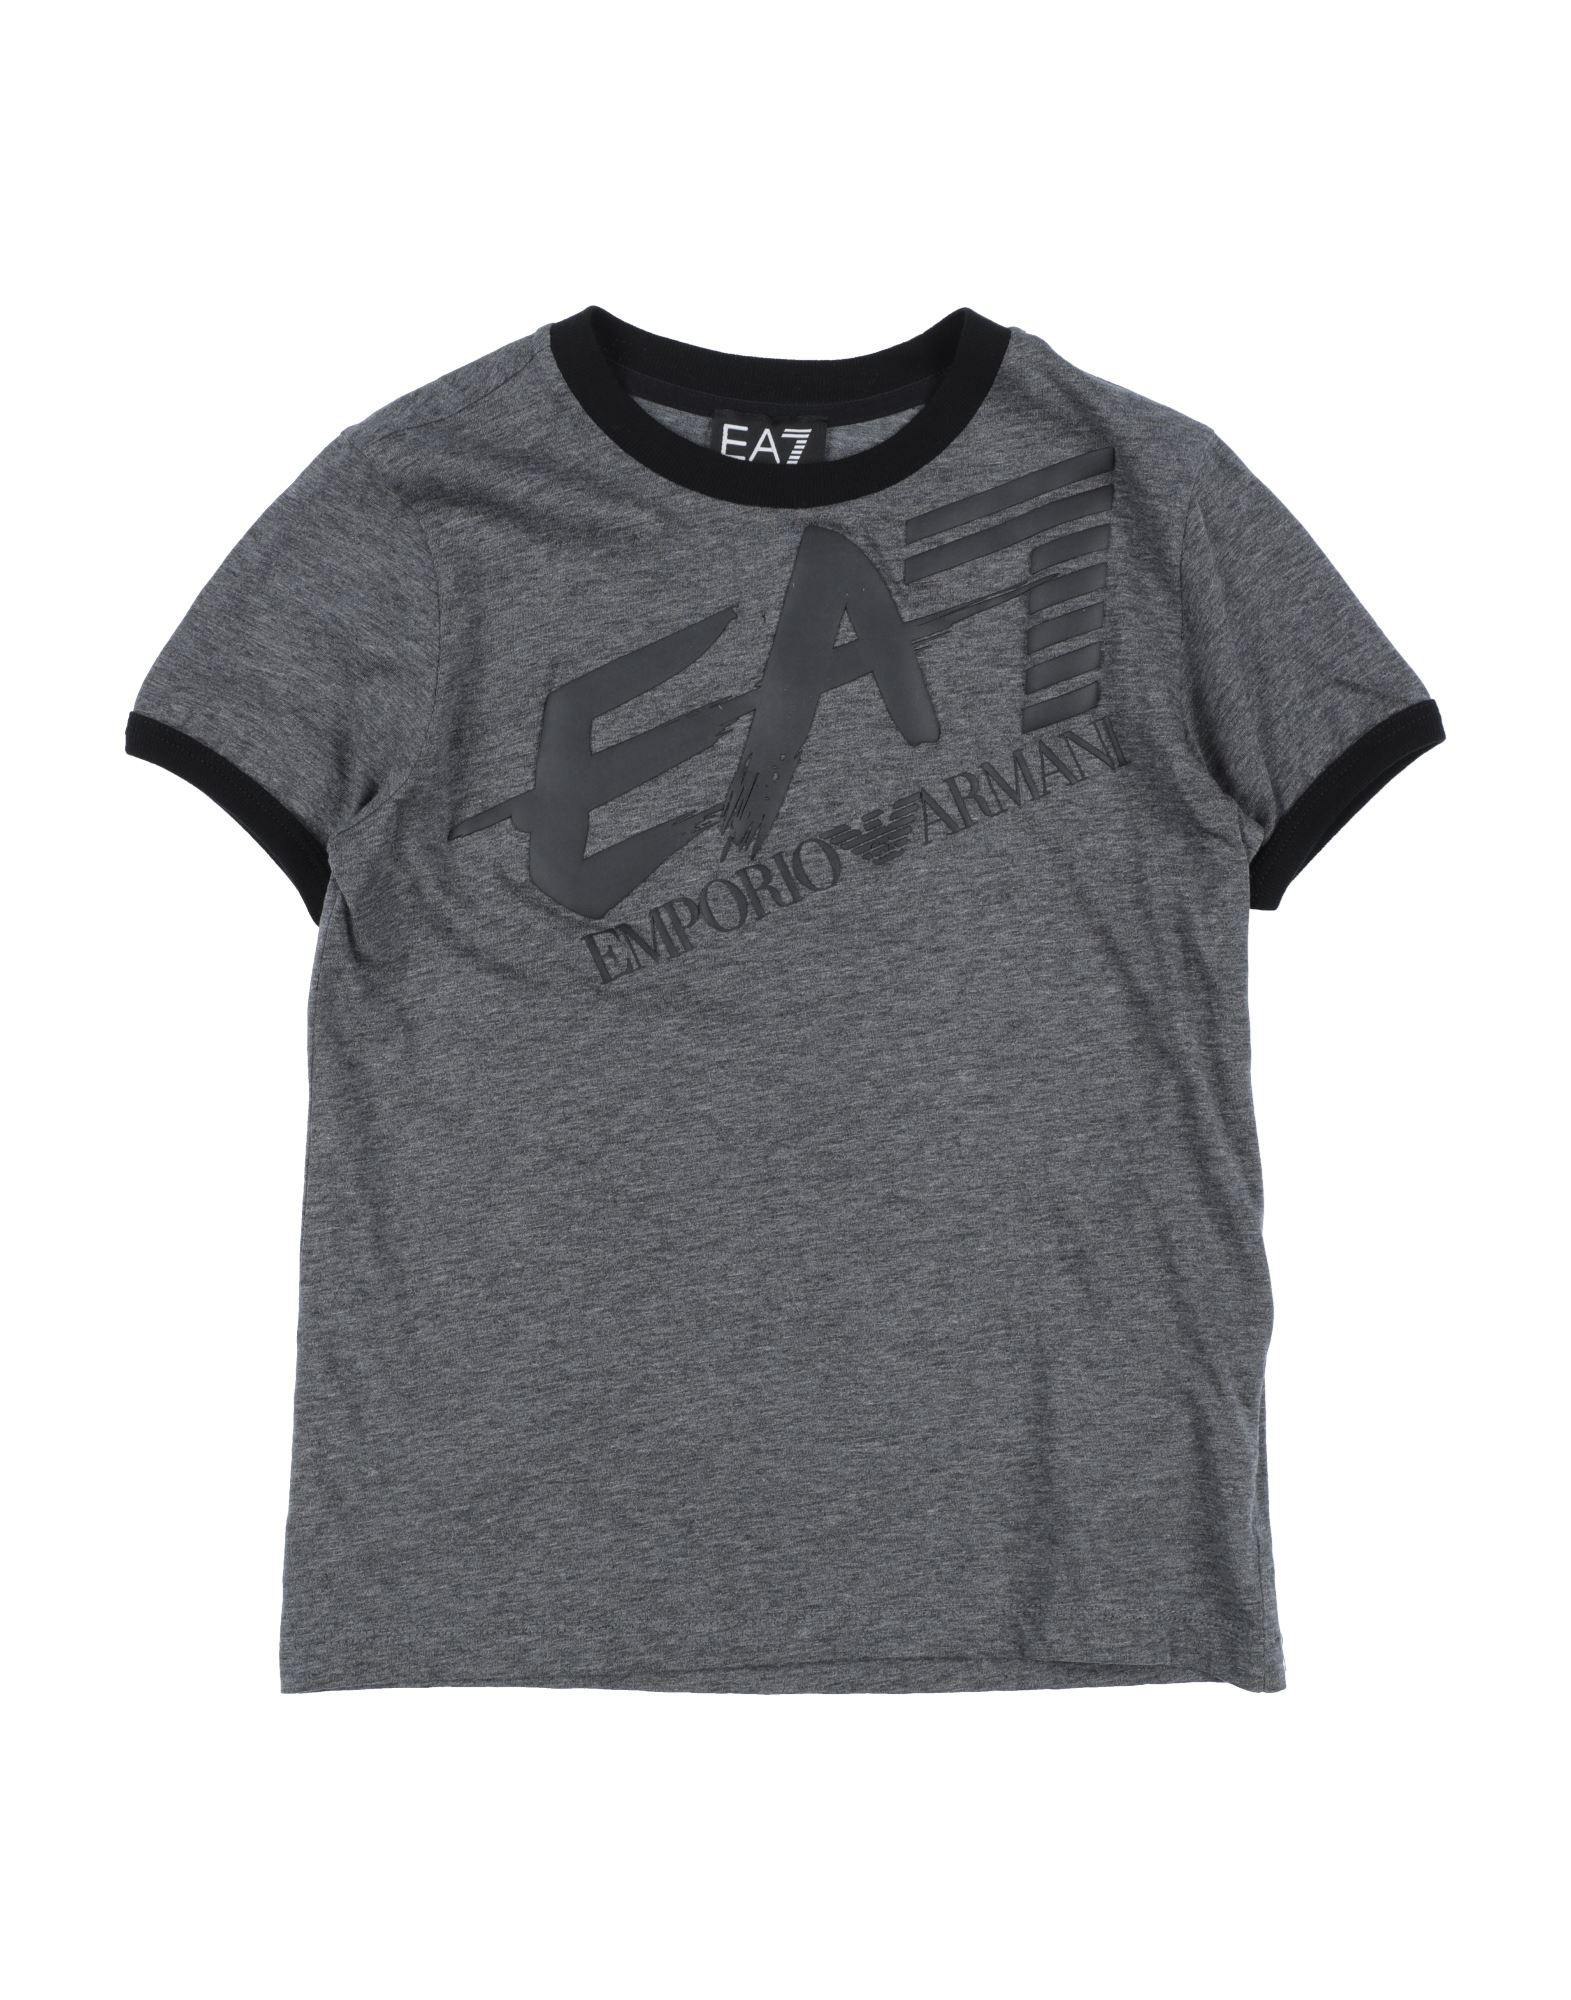 Ea7 Kids' T-shirts In Lead